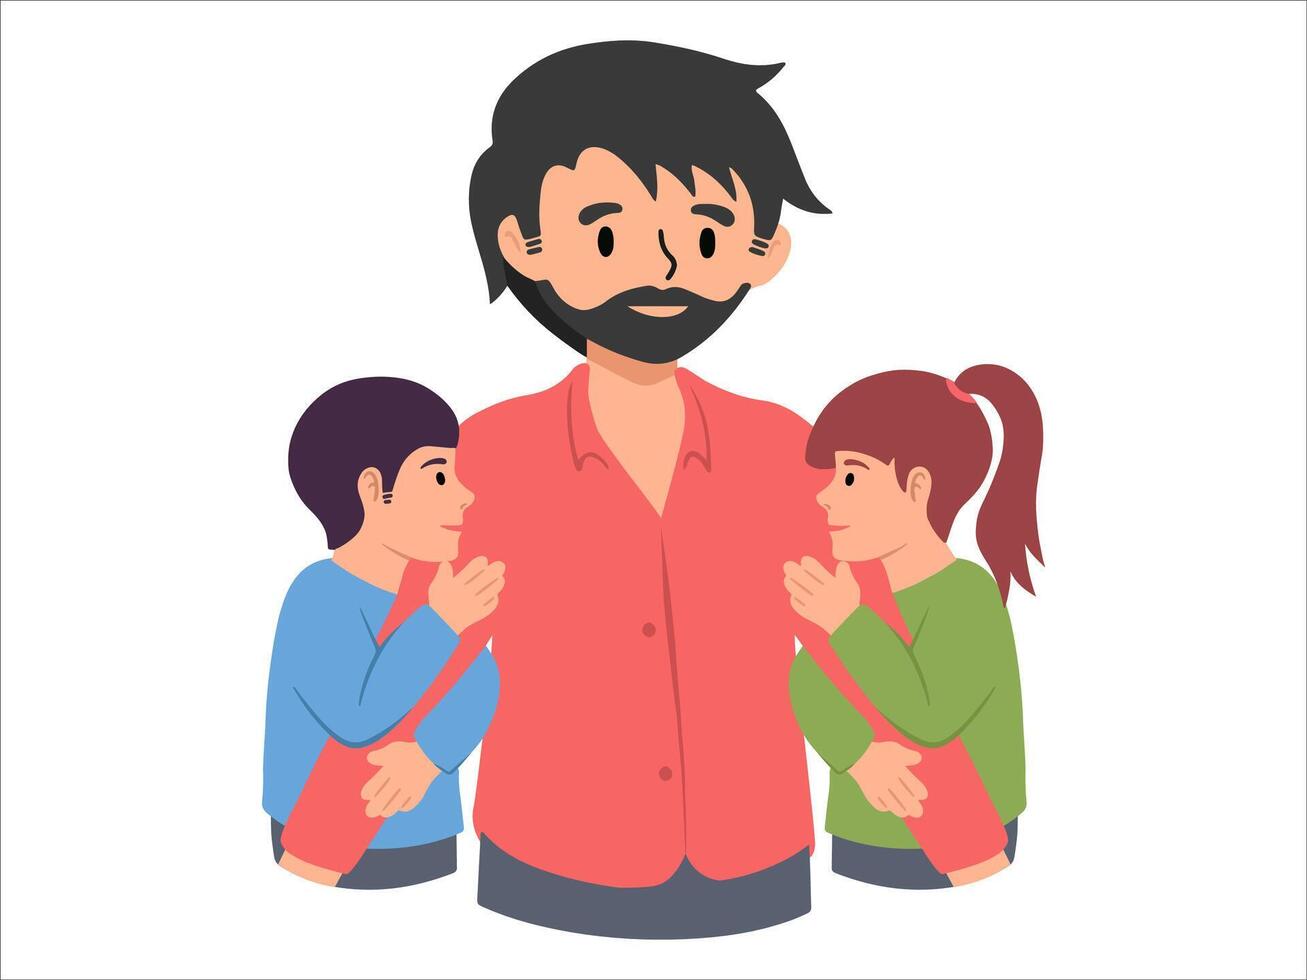 pai com filho e filha ou avatar ícone ilustração vetor